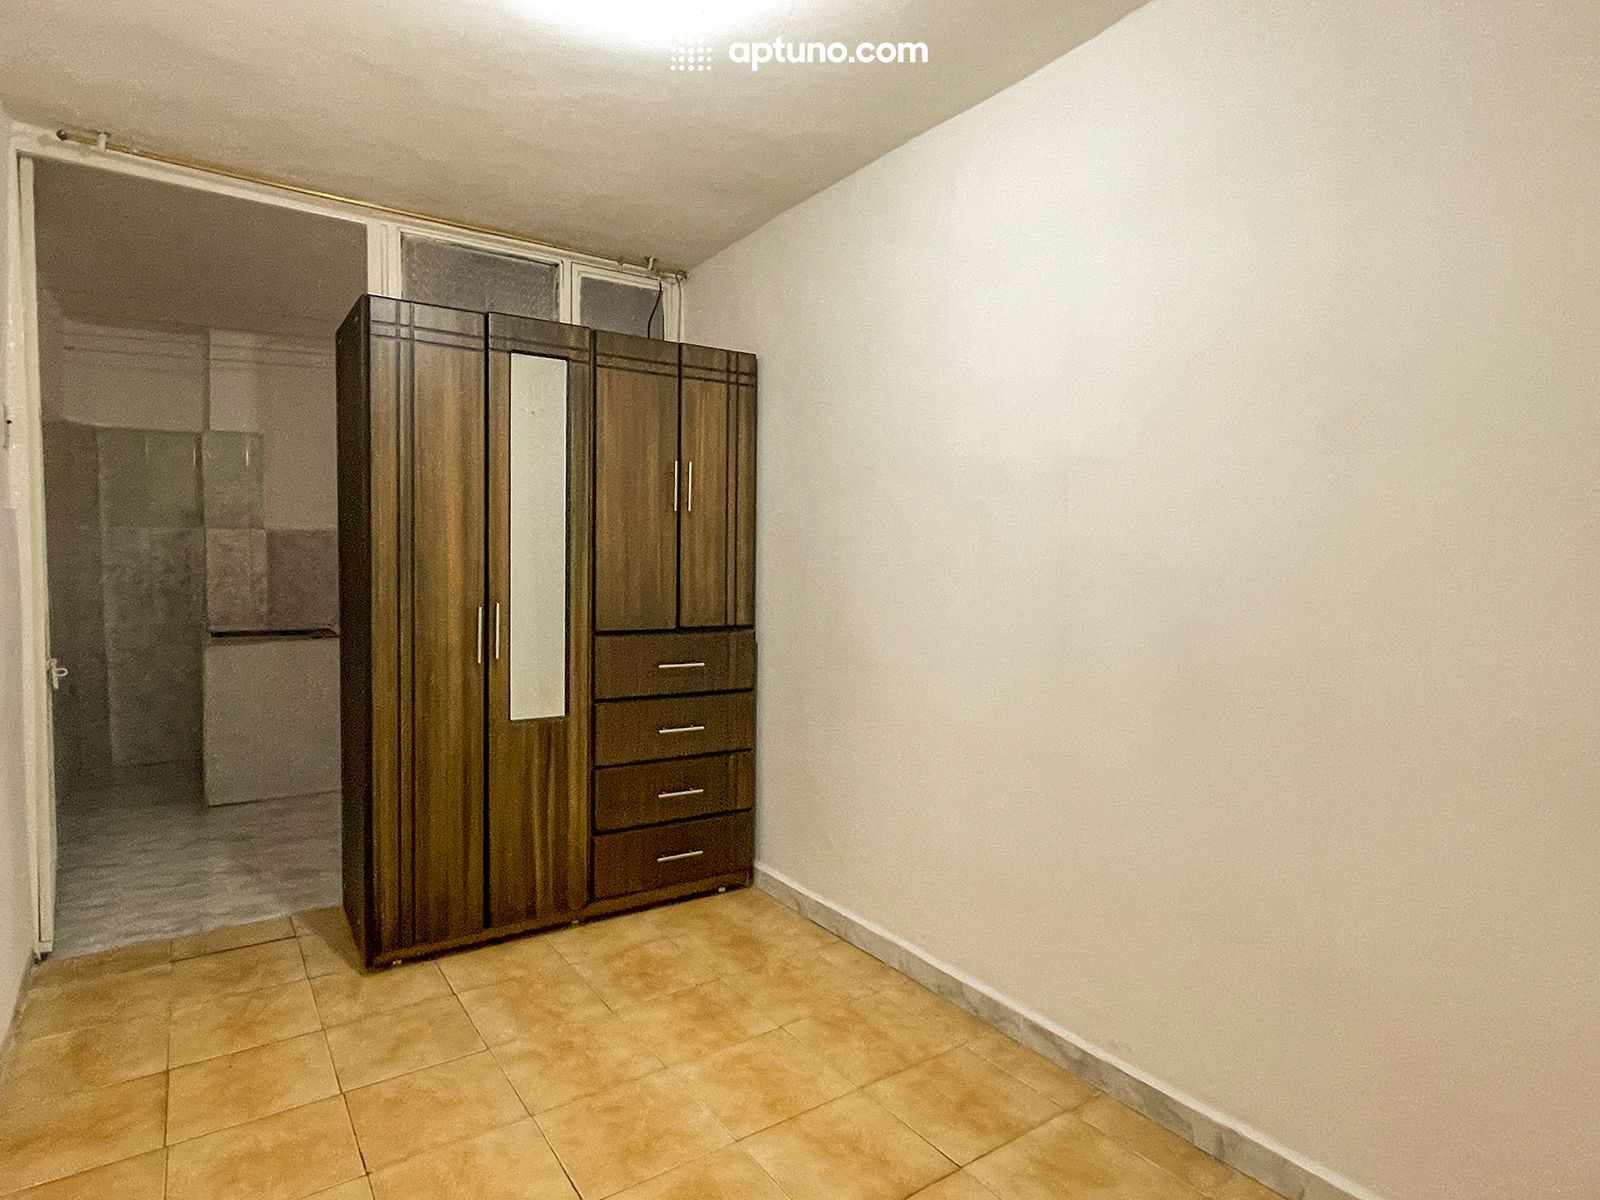 Apartamento en arriendo La Serena 30 m² - $ 800.000,00